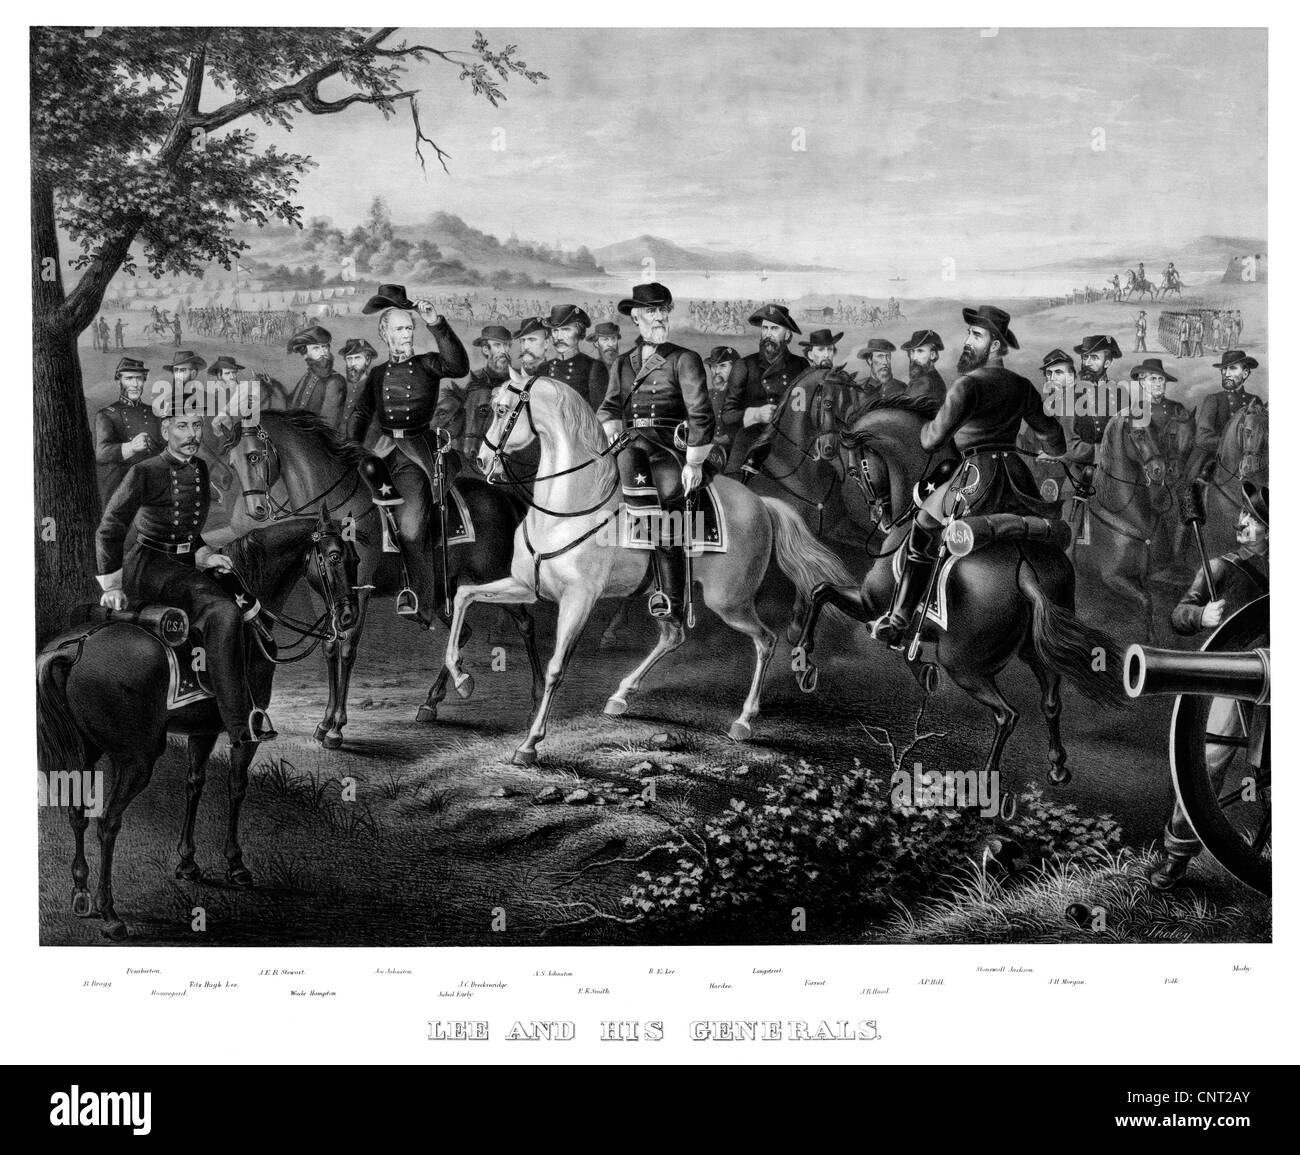 Digital restaurierten Bürgerkrieg print zeigt General Lee und andere prominente Konföderierten Generäle des Bürgerkriegs auf dem Pferderücken. Stockfoto